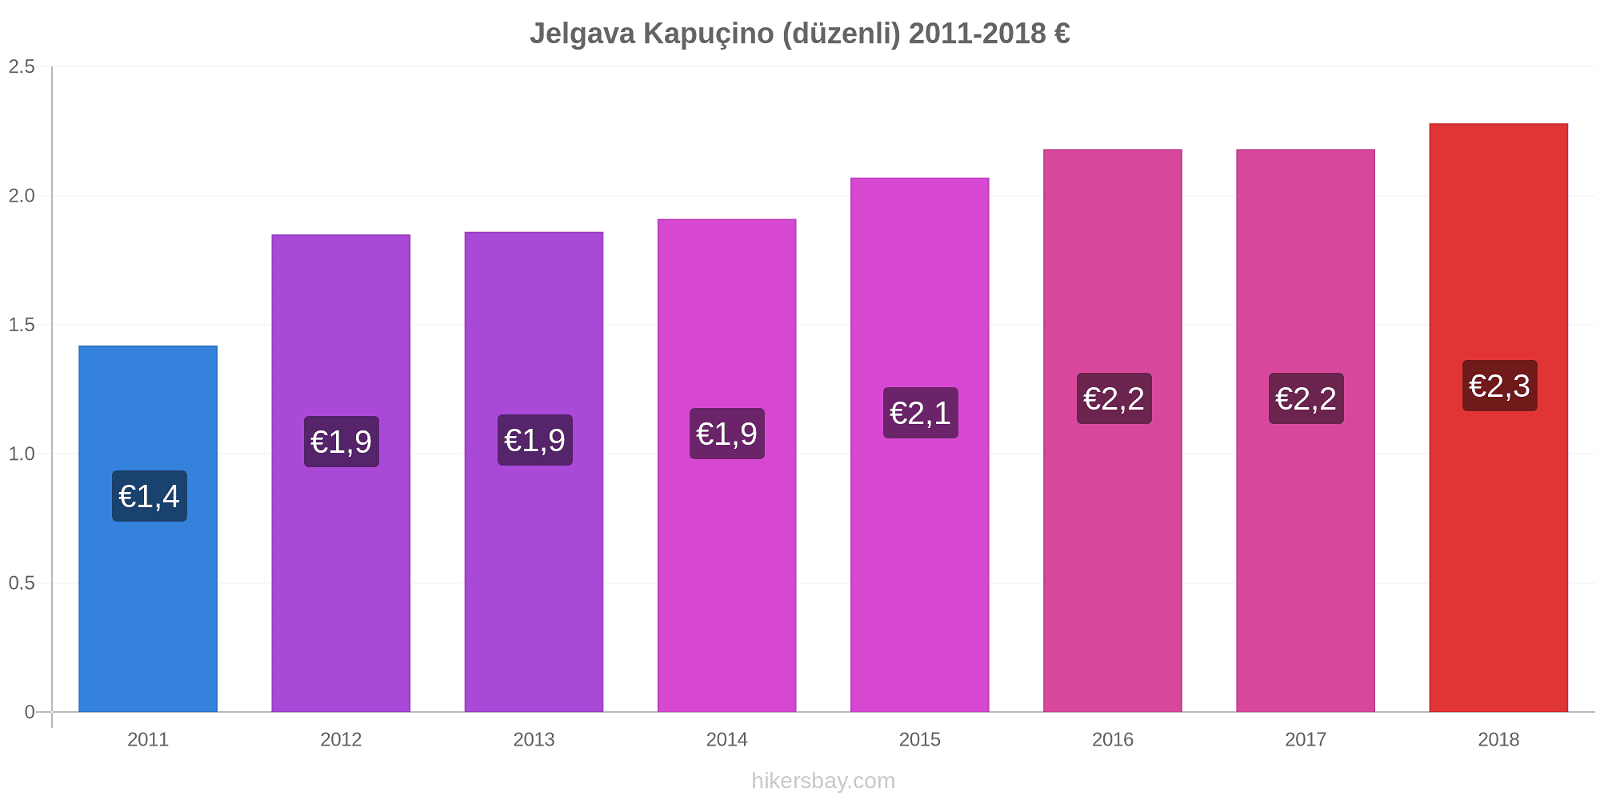 Jelgava fiyat değişiklikleri Kapuçino (düzenli) hikersbay.com